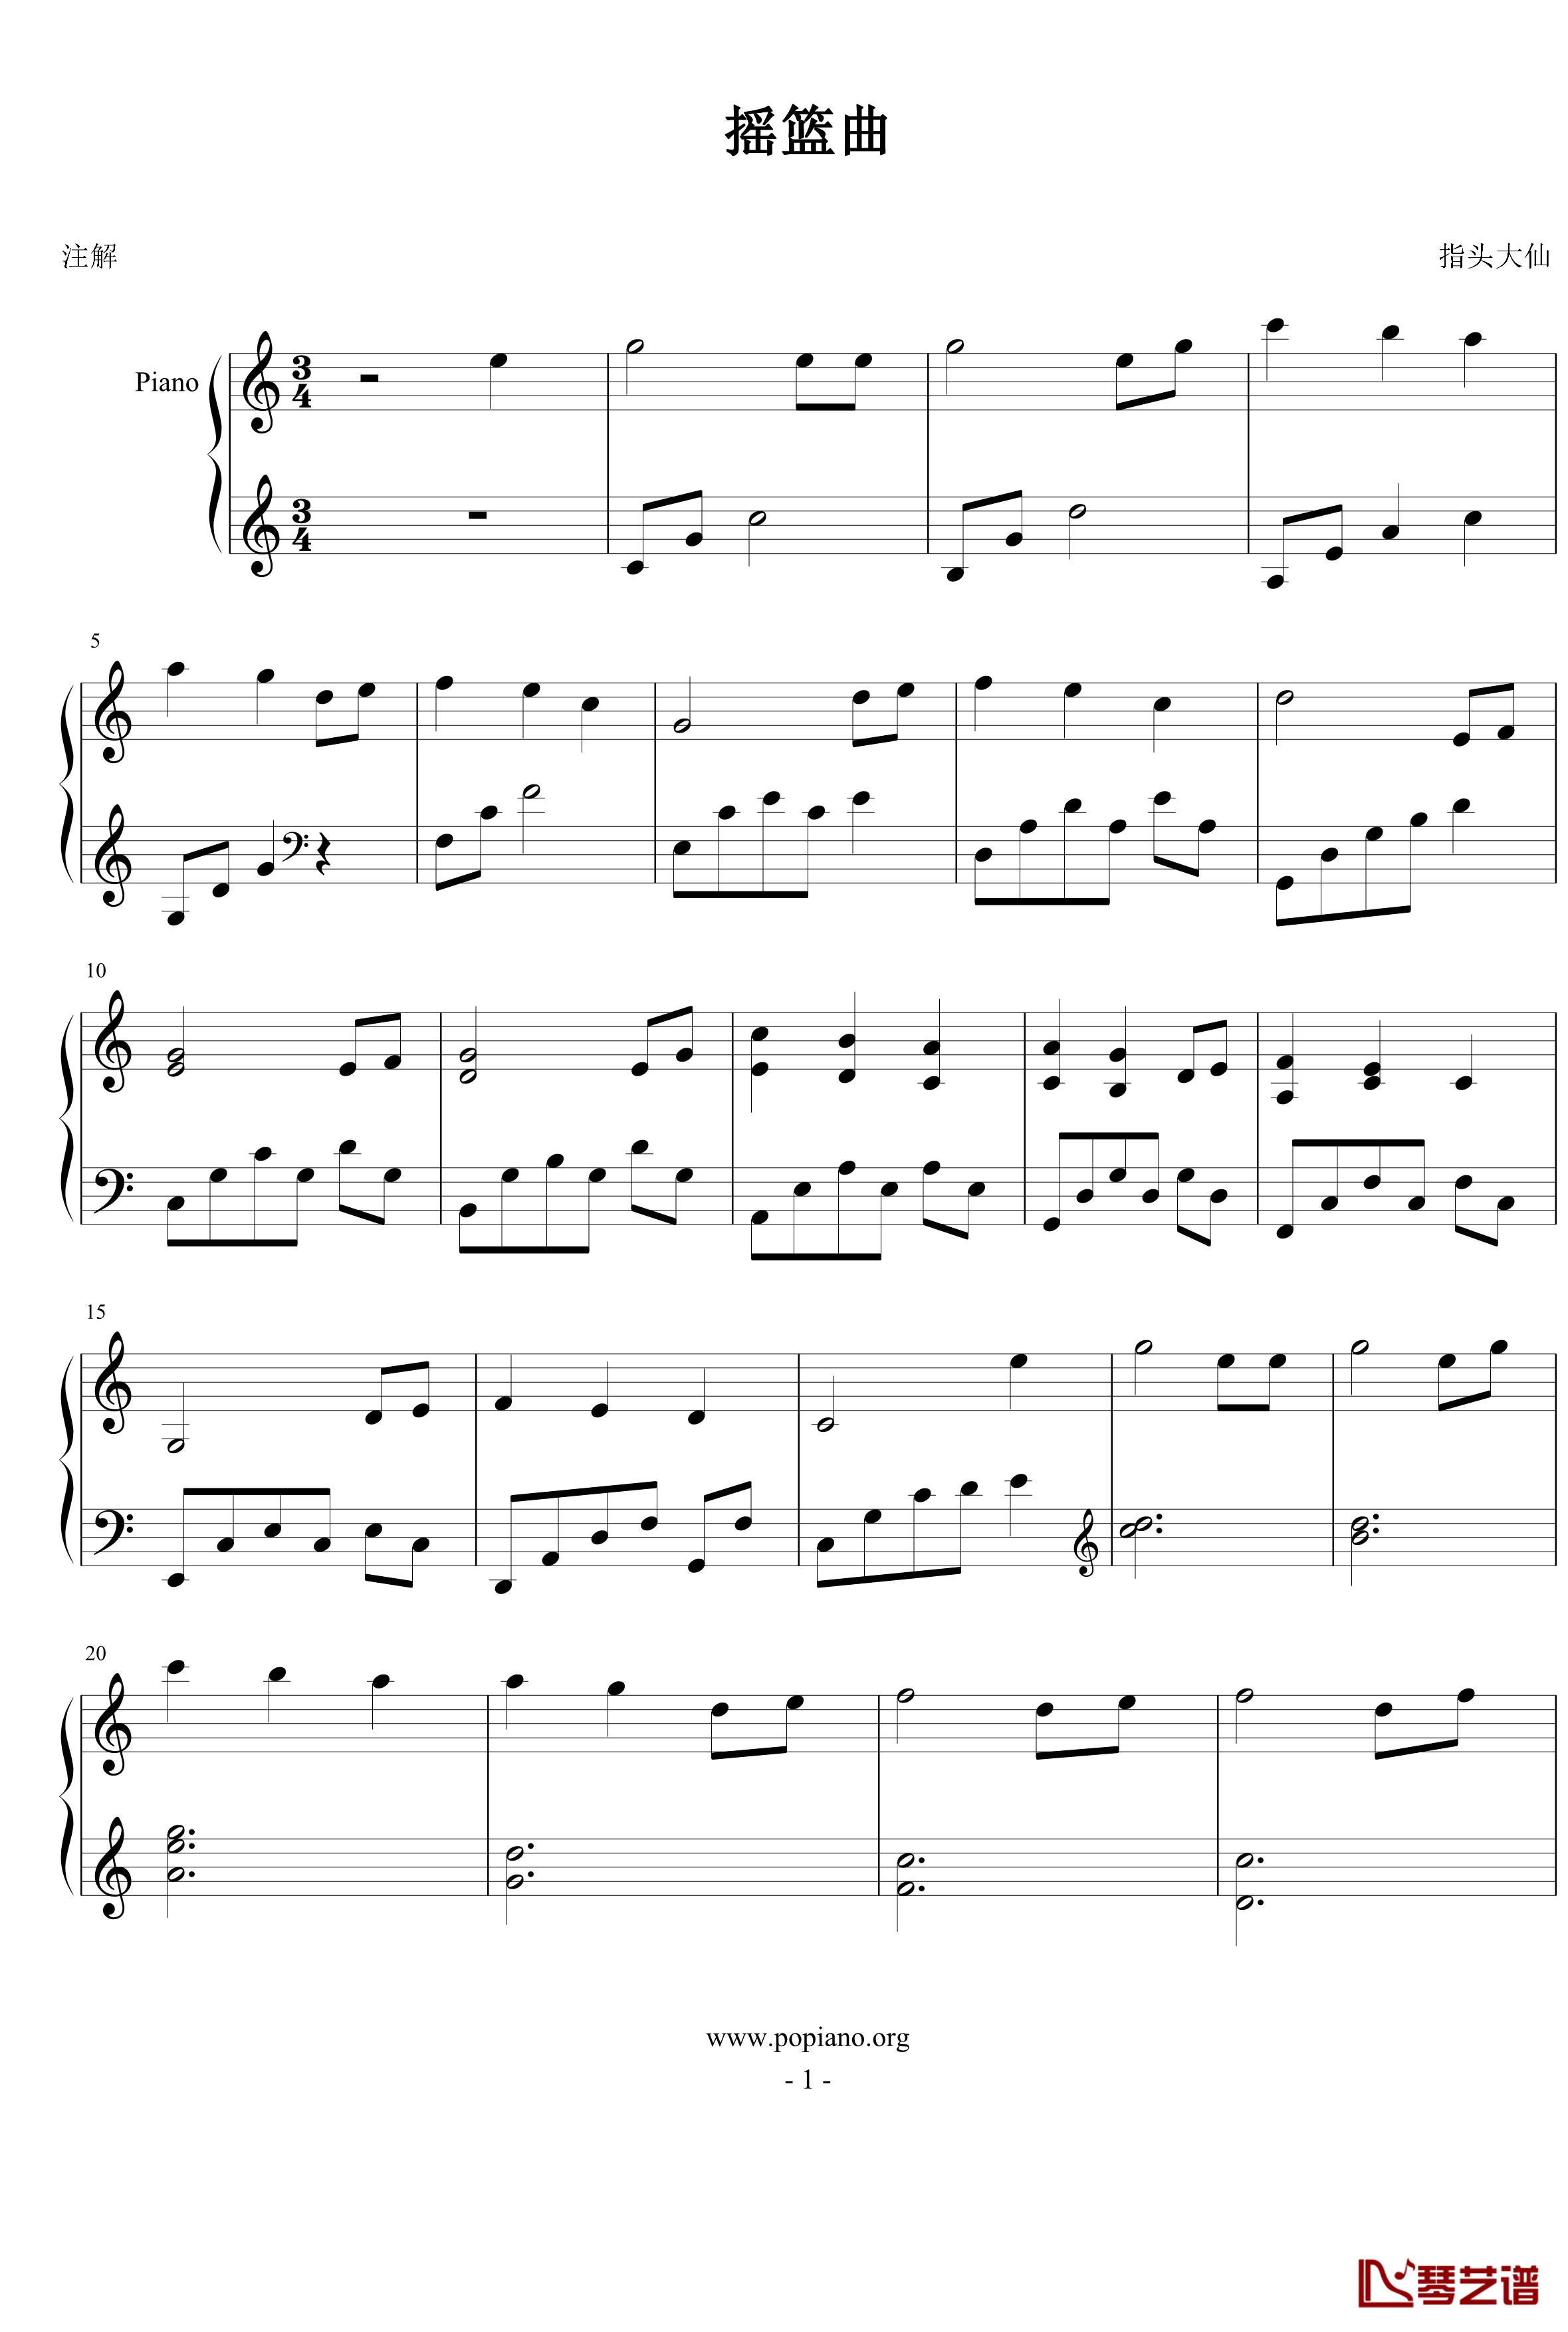 摇篮曲钢琴谱-世界名曲-改编简单版